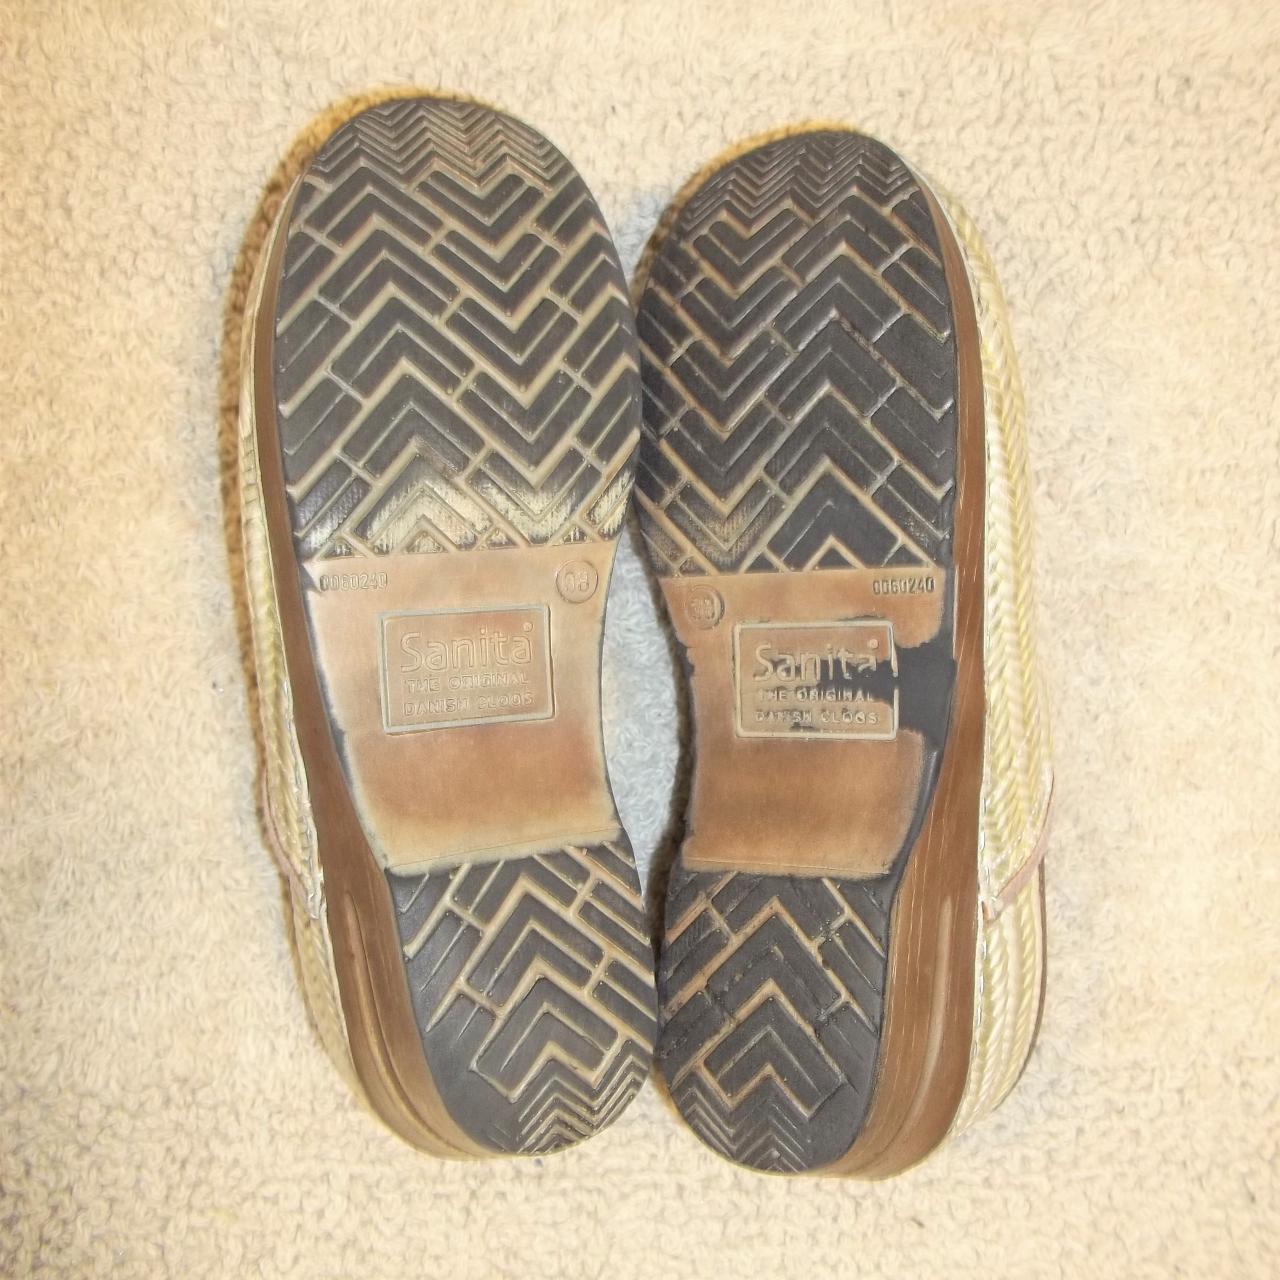 Womens Clogs Shoes Brand: Sanita The Original... - Depop